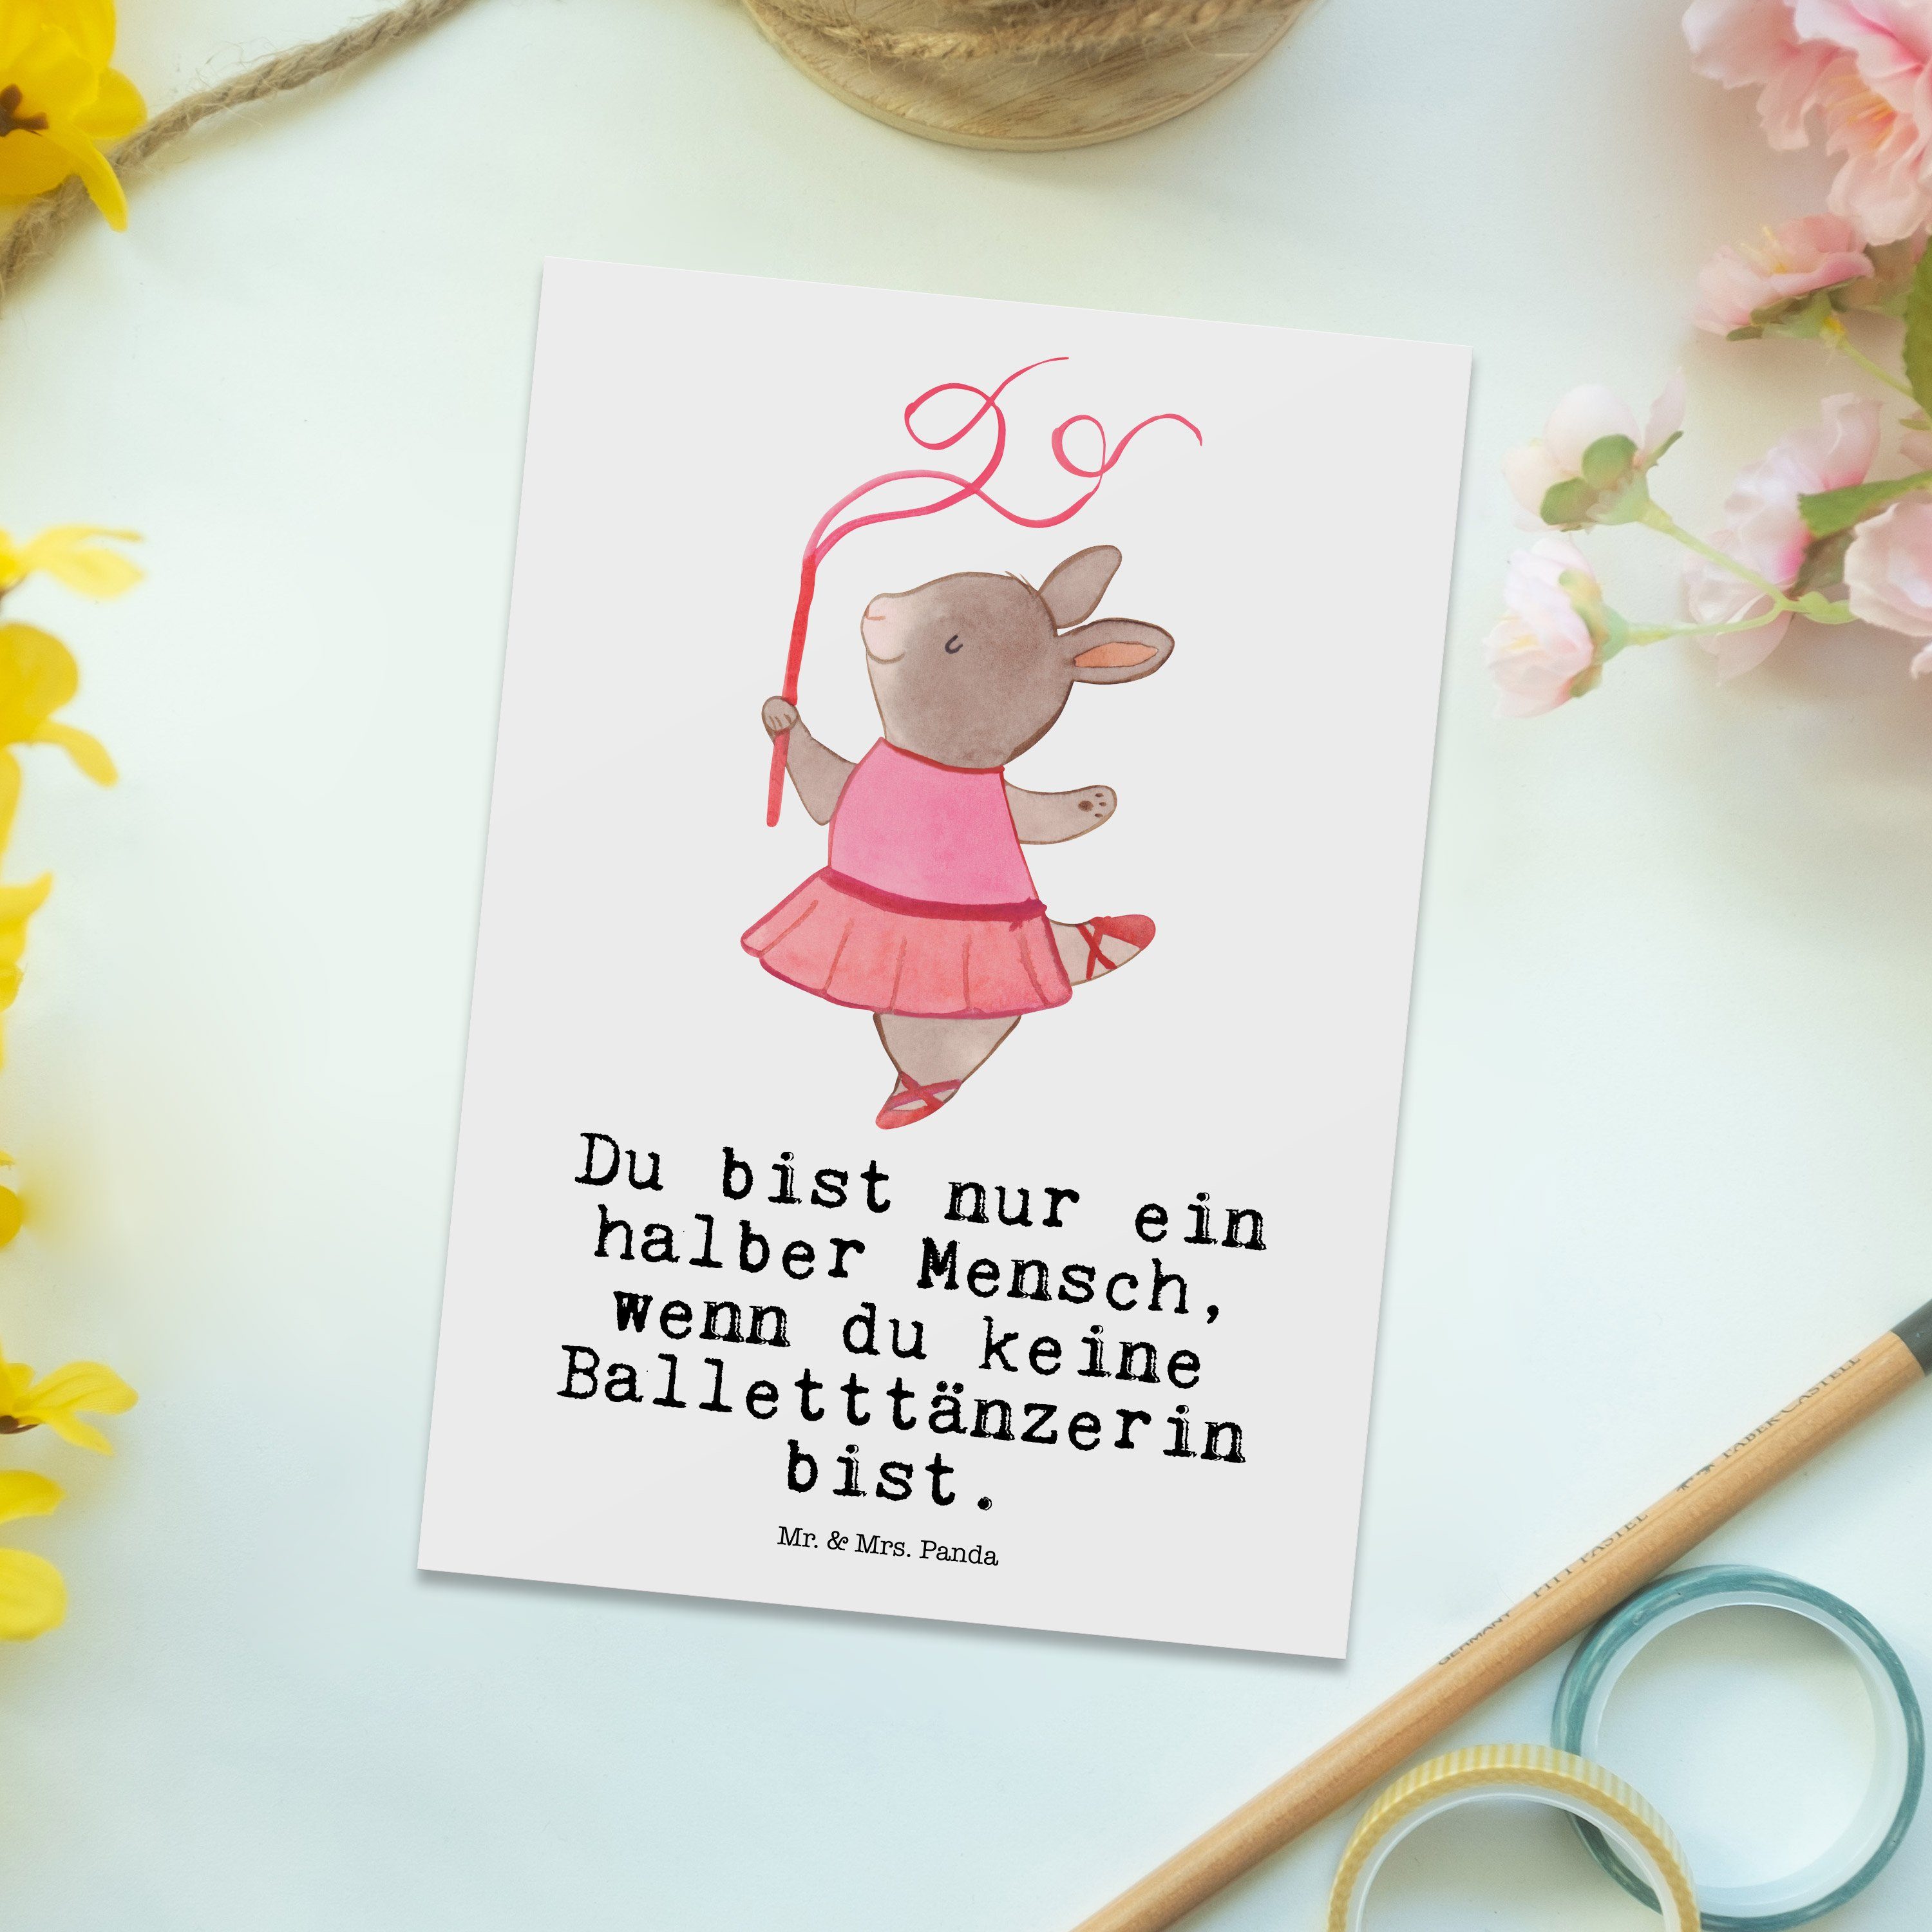 Mr. & - Mrs. mit Balletttänzerin Panda - Weiß Postkarte Herz Einlad Geschenk, Ballettunterricht